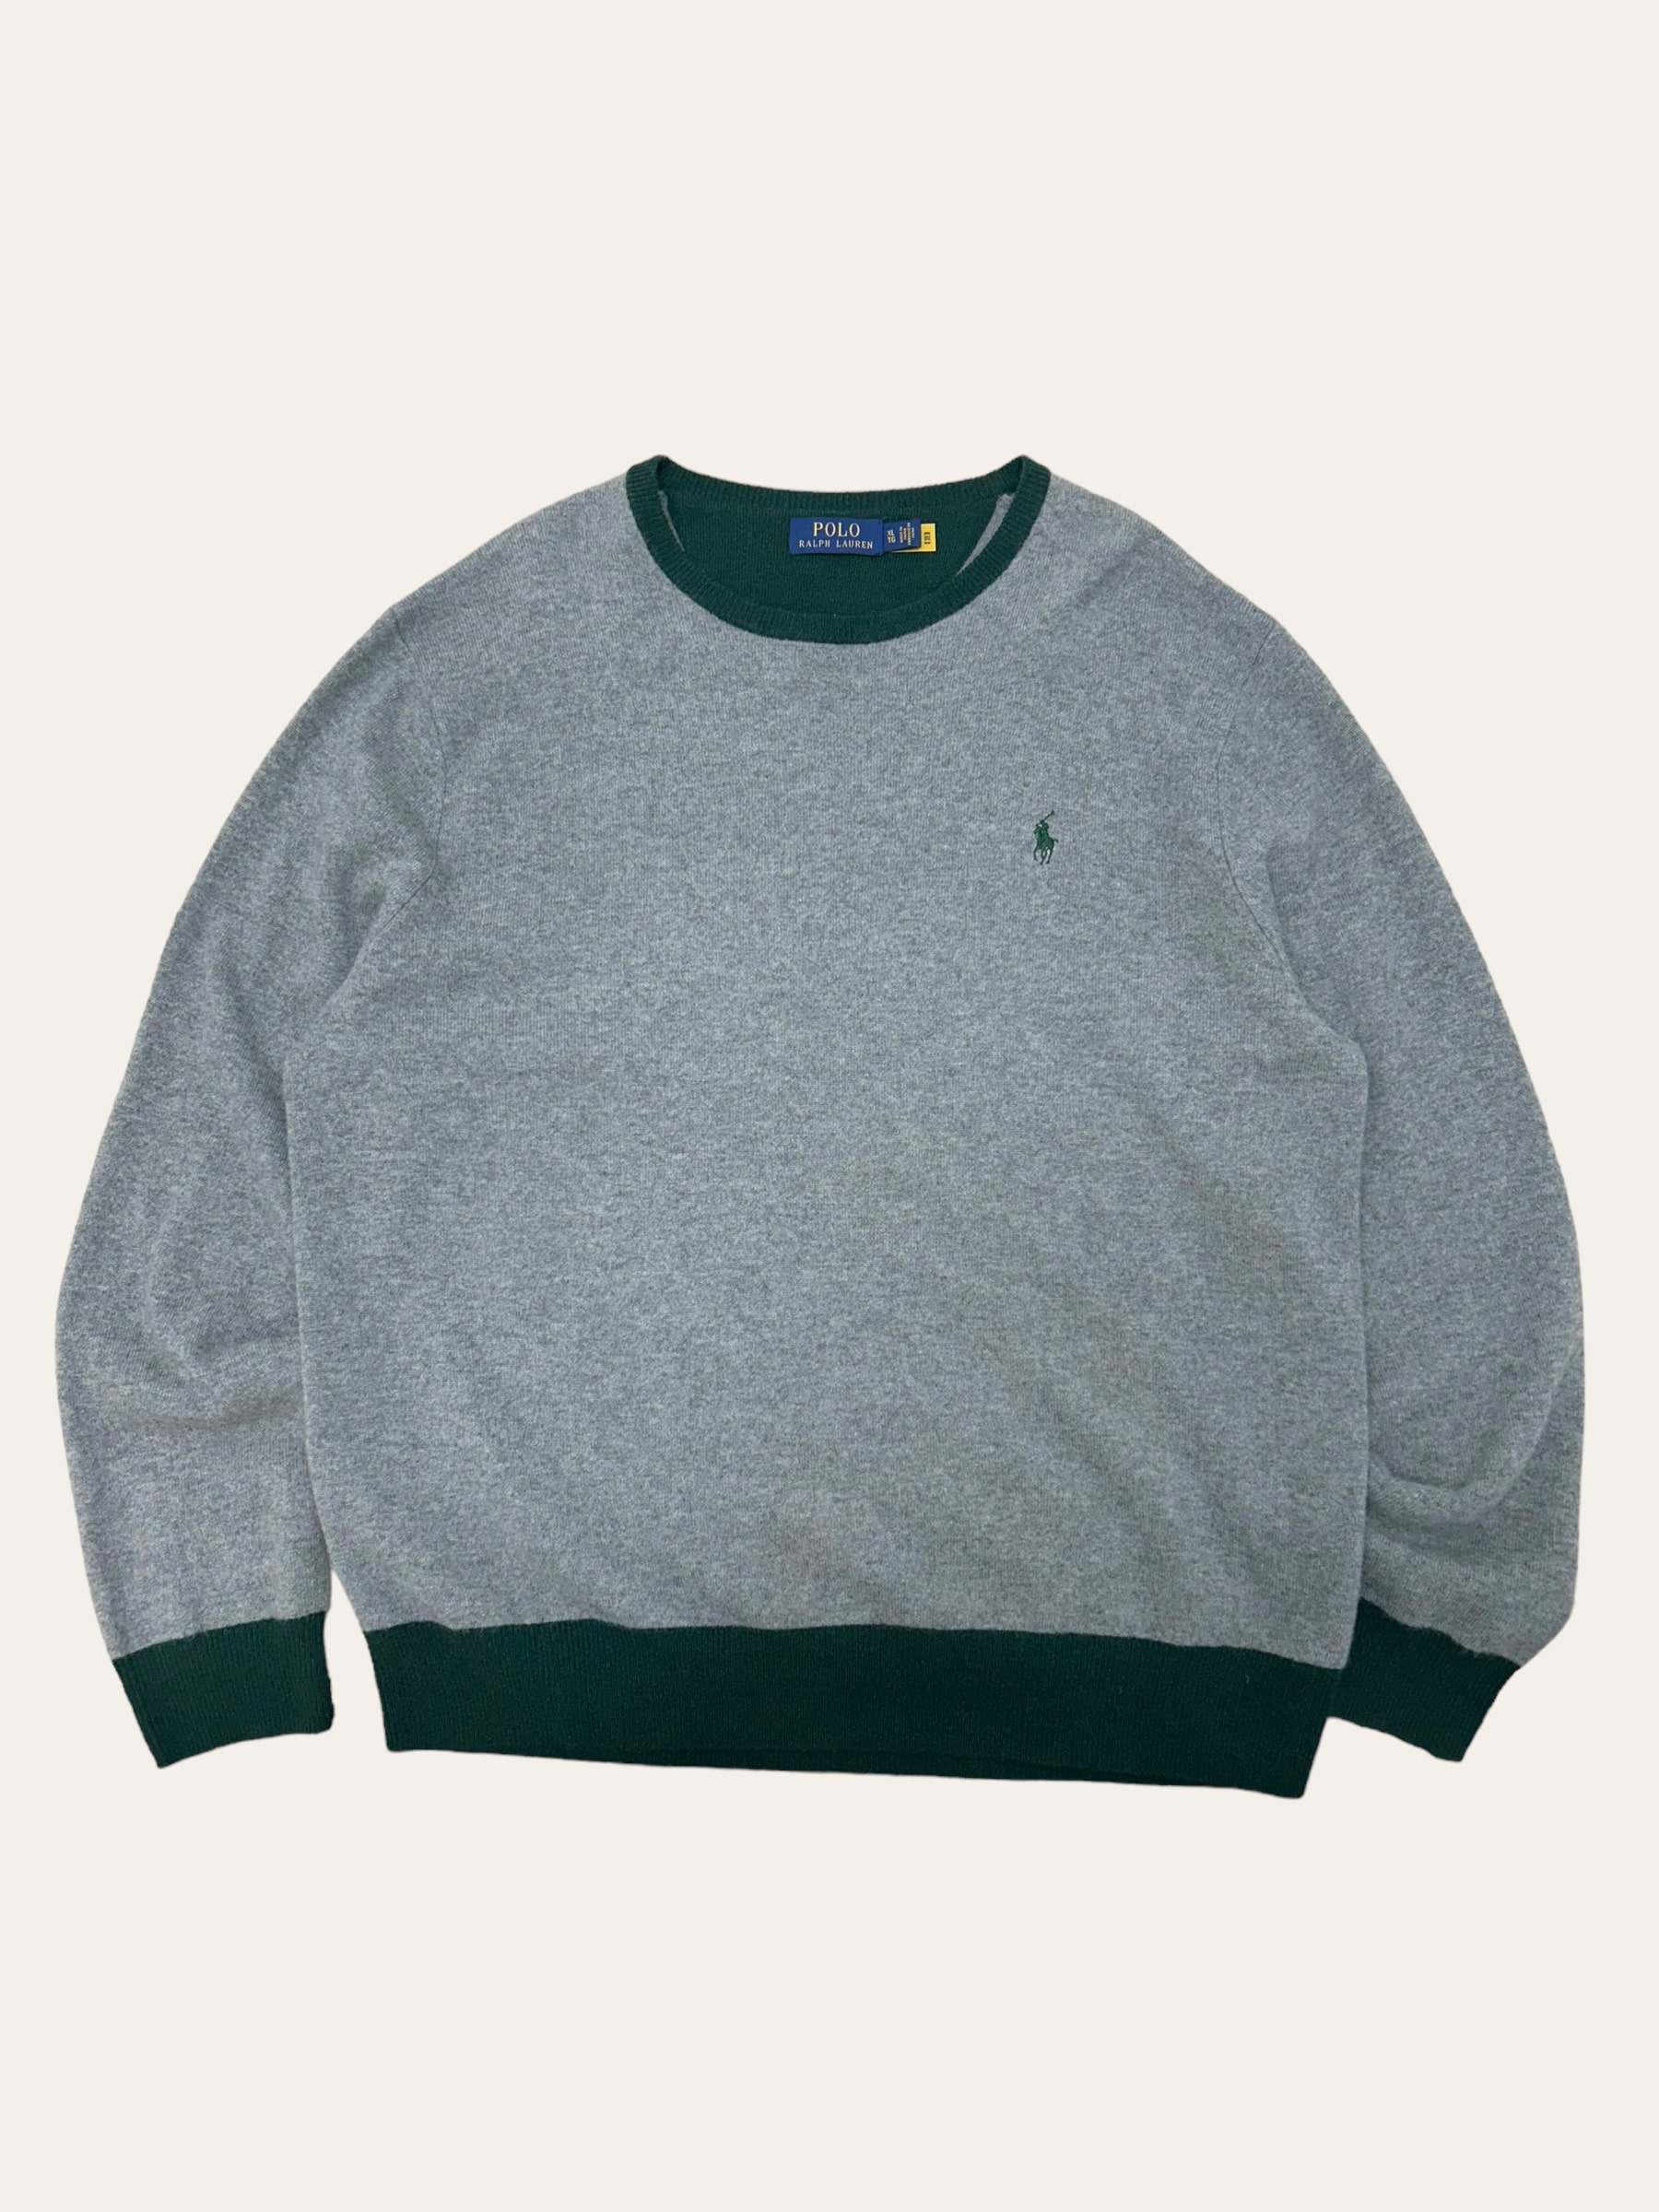 Polo ralph lauren gray/green wool crewneck sweater XL